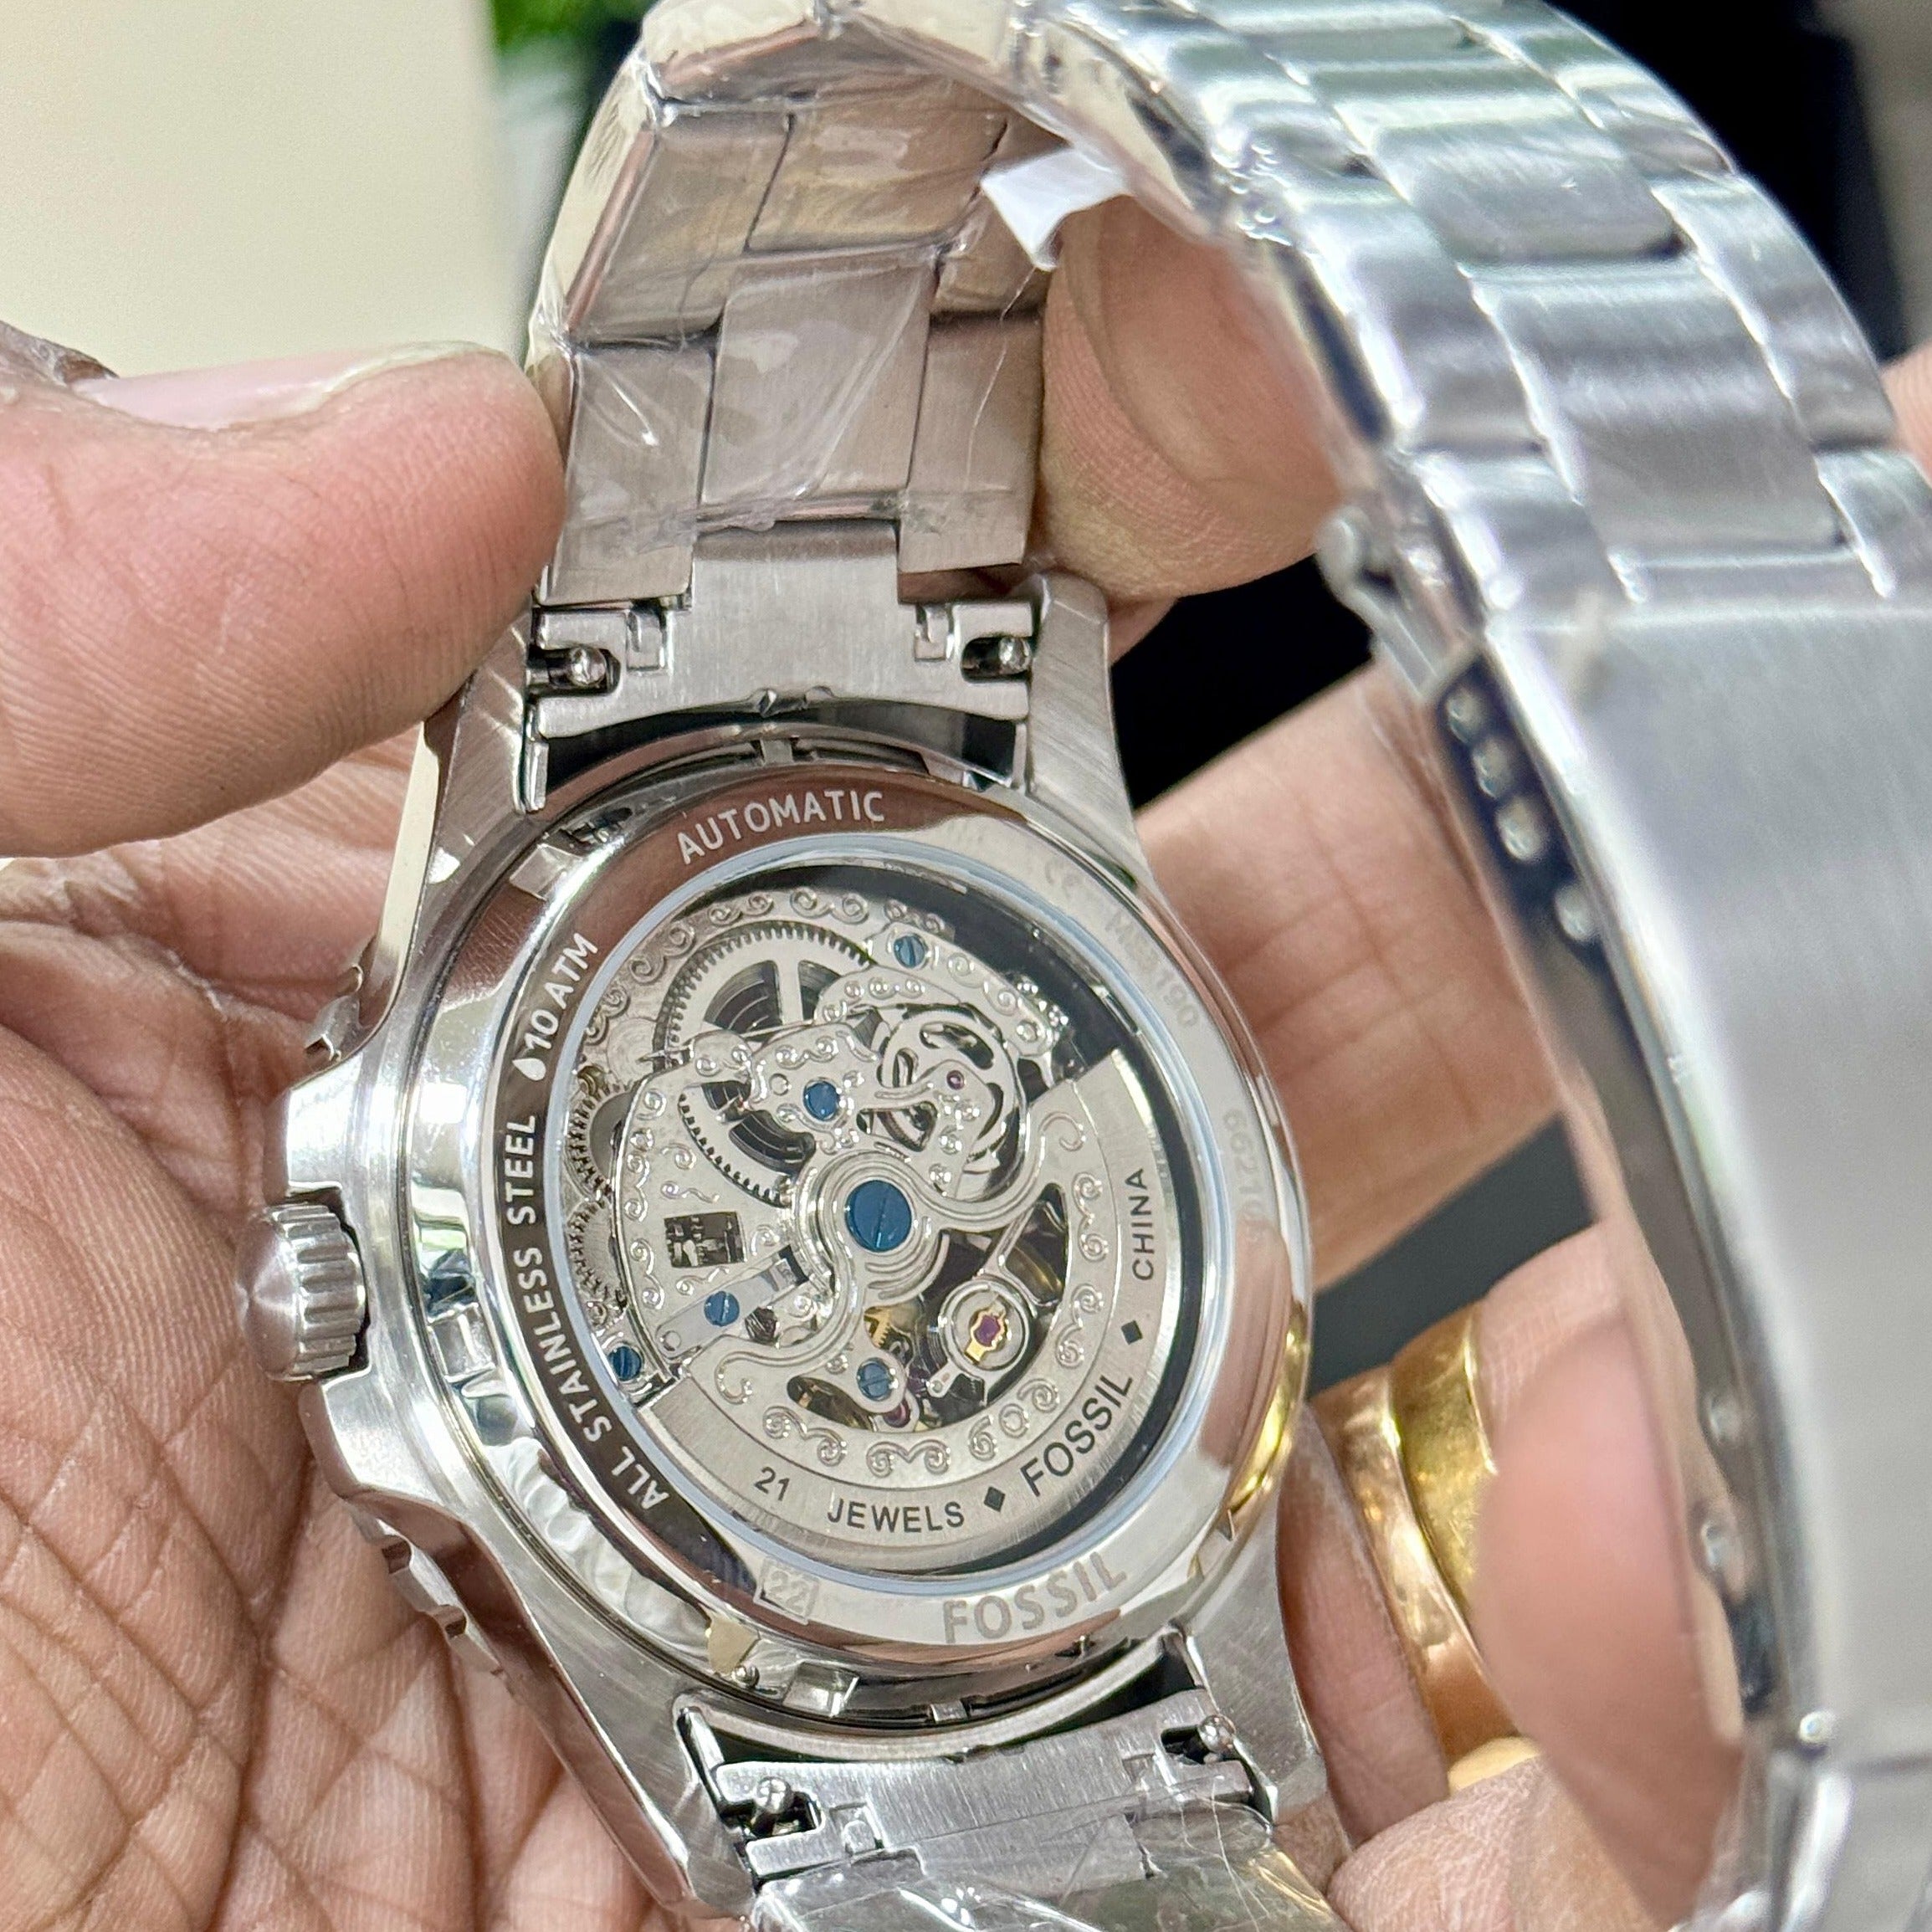 Fsl premium model luxury watch - AmazingBaba